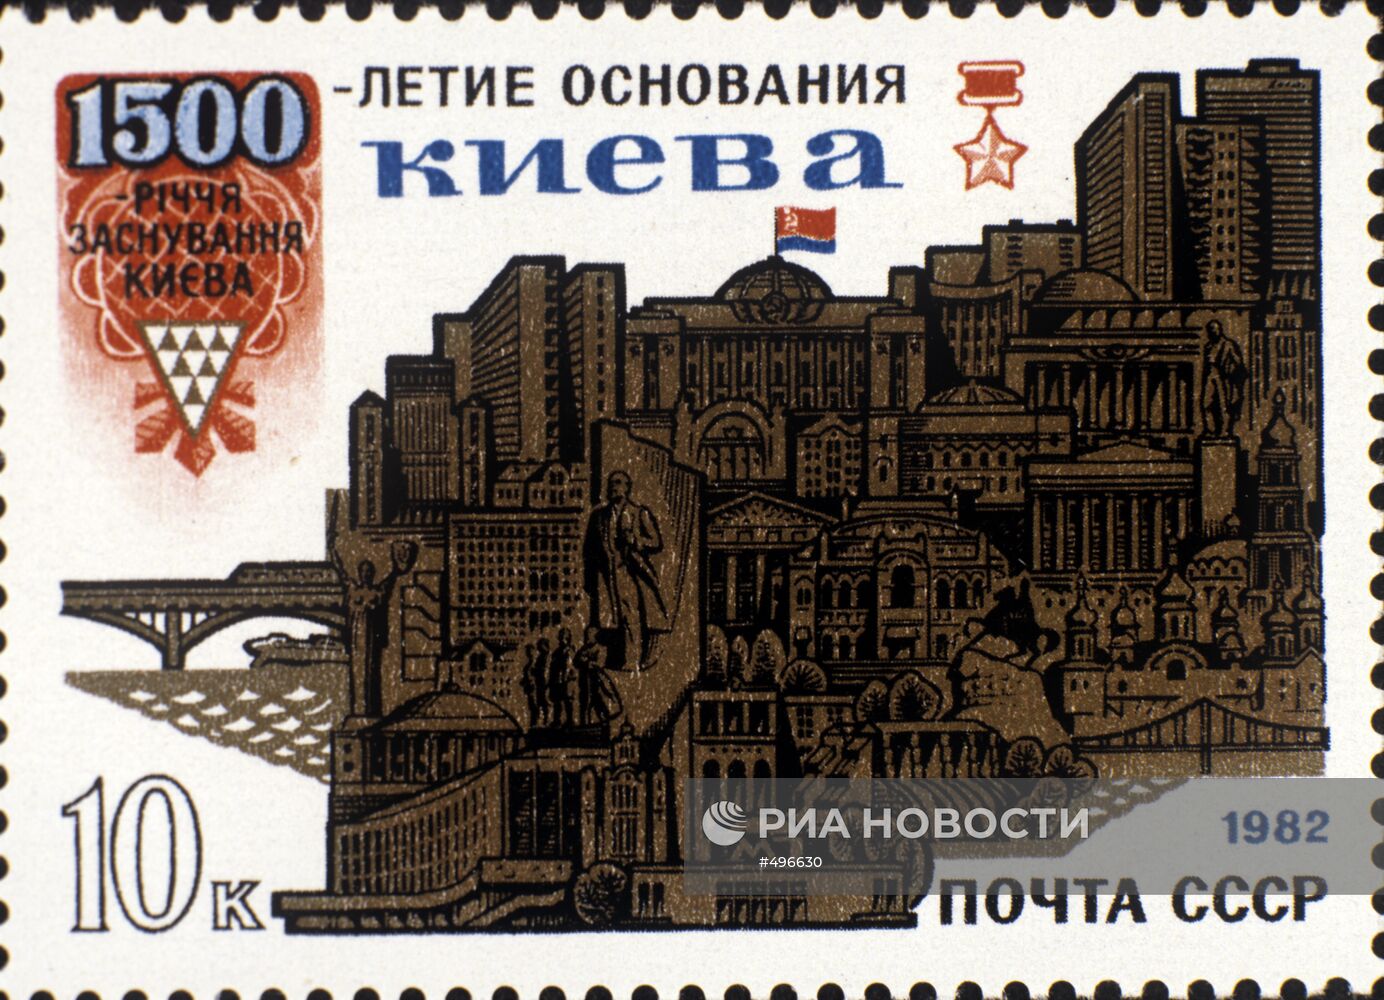 Почтовая марка "1500-лет основания города Киева"